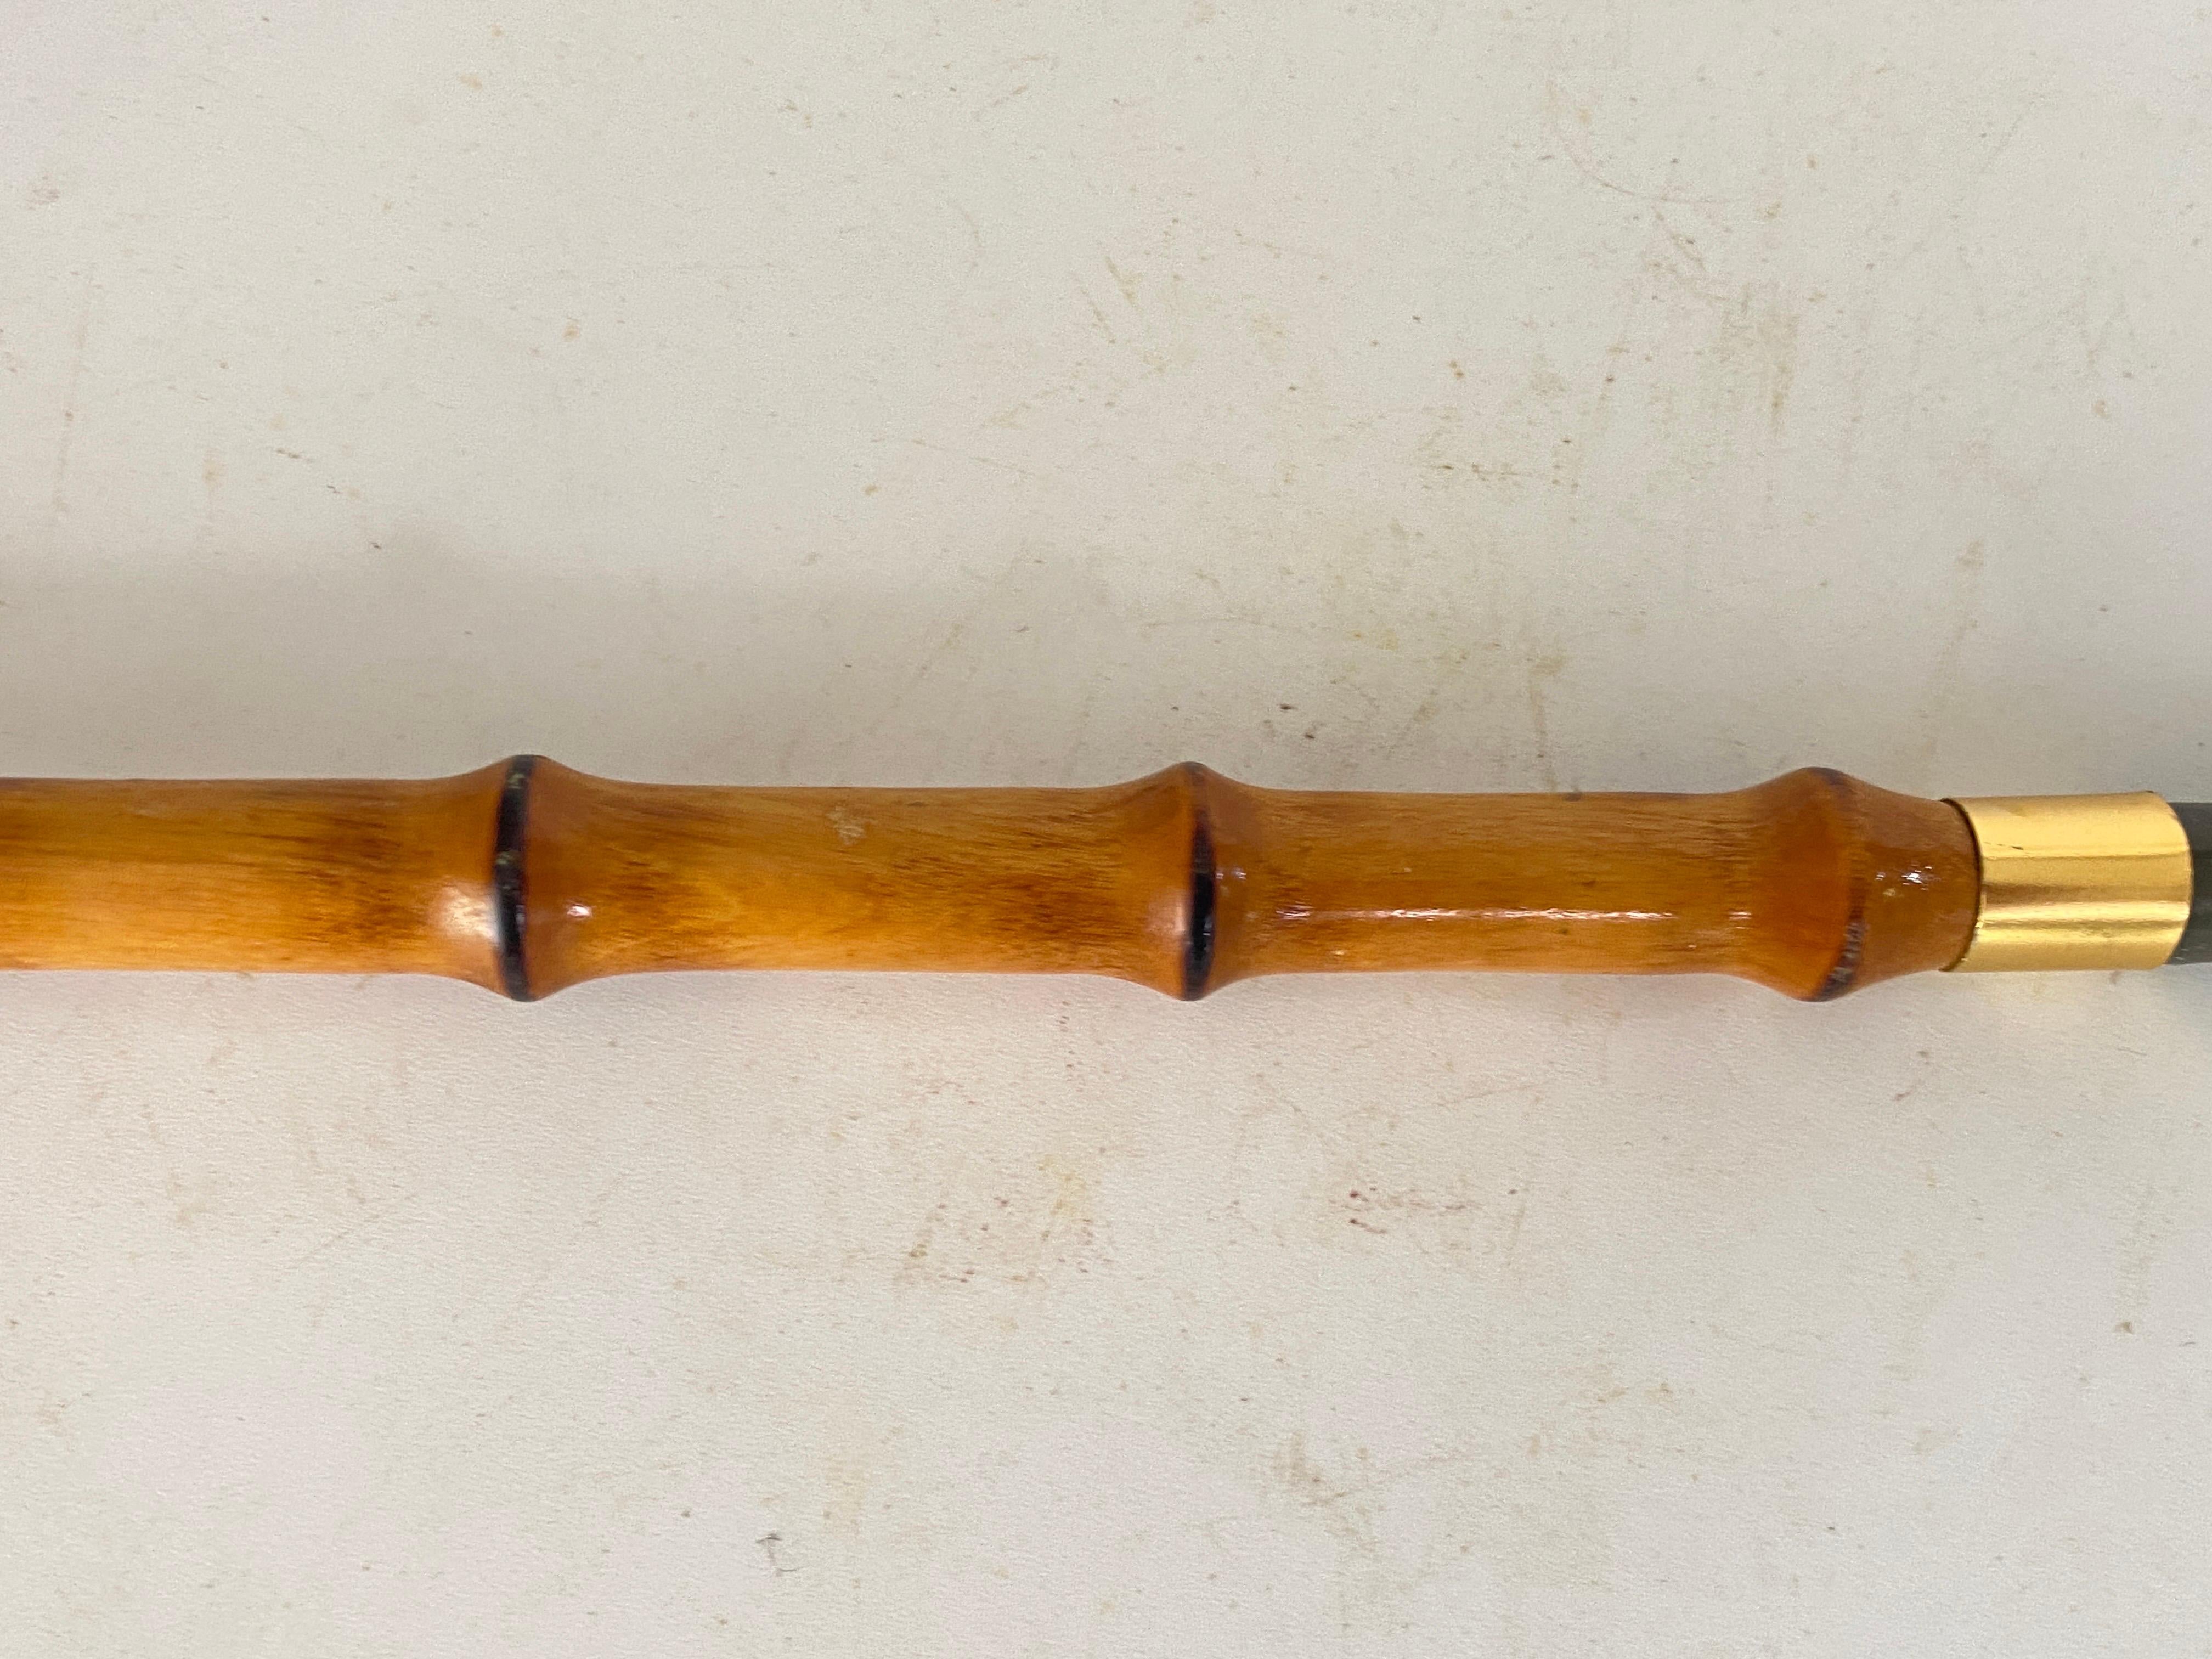 Diese Faux Bamboo Schuh Horn, wurde in Frankreich CIRCA 1970 gemacht.
Er ist aus Bambusimitat, Metall, Messing und Horn gefertigt.